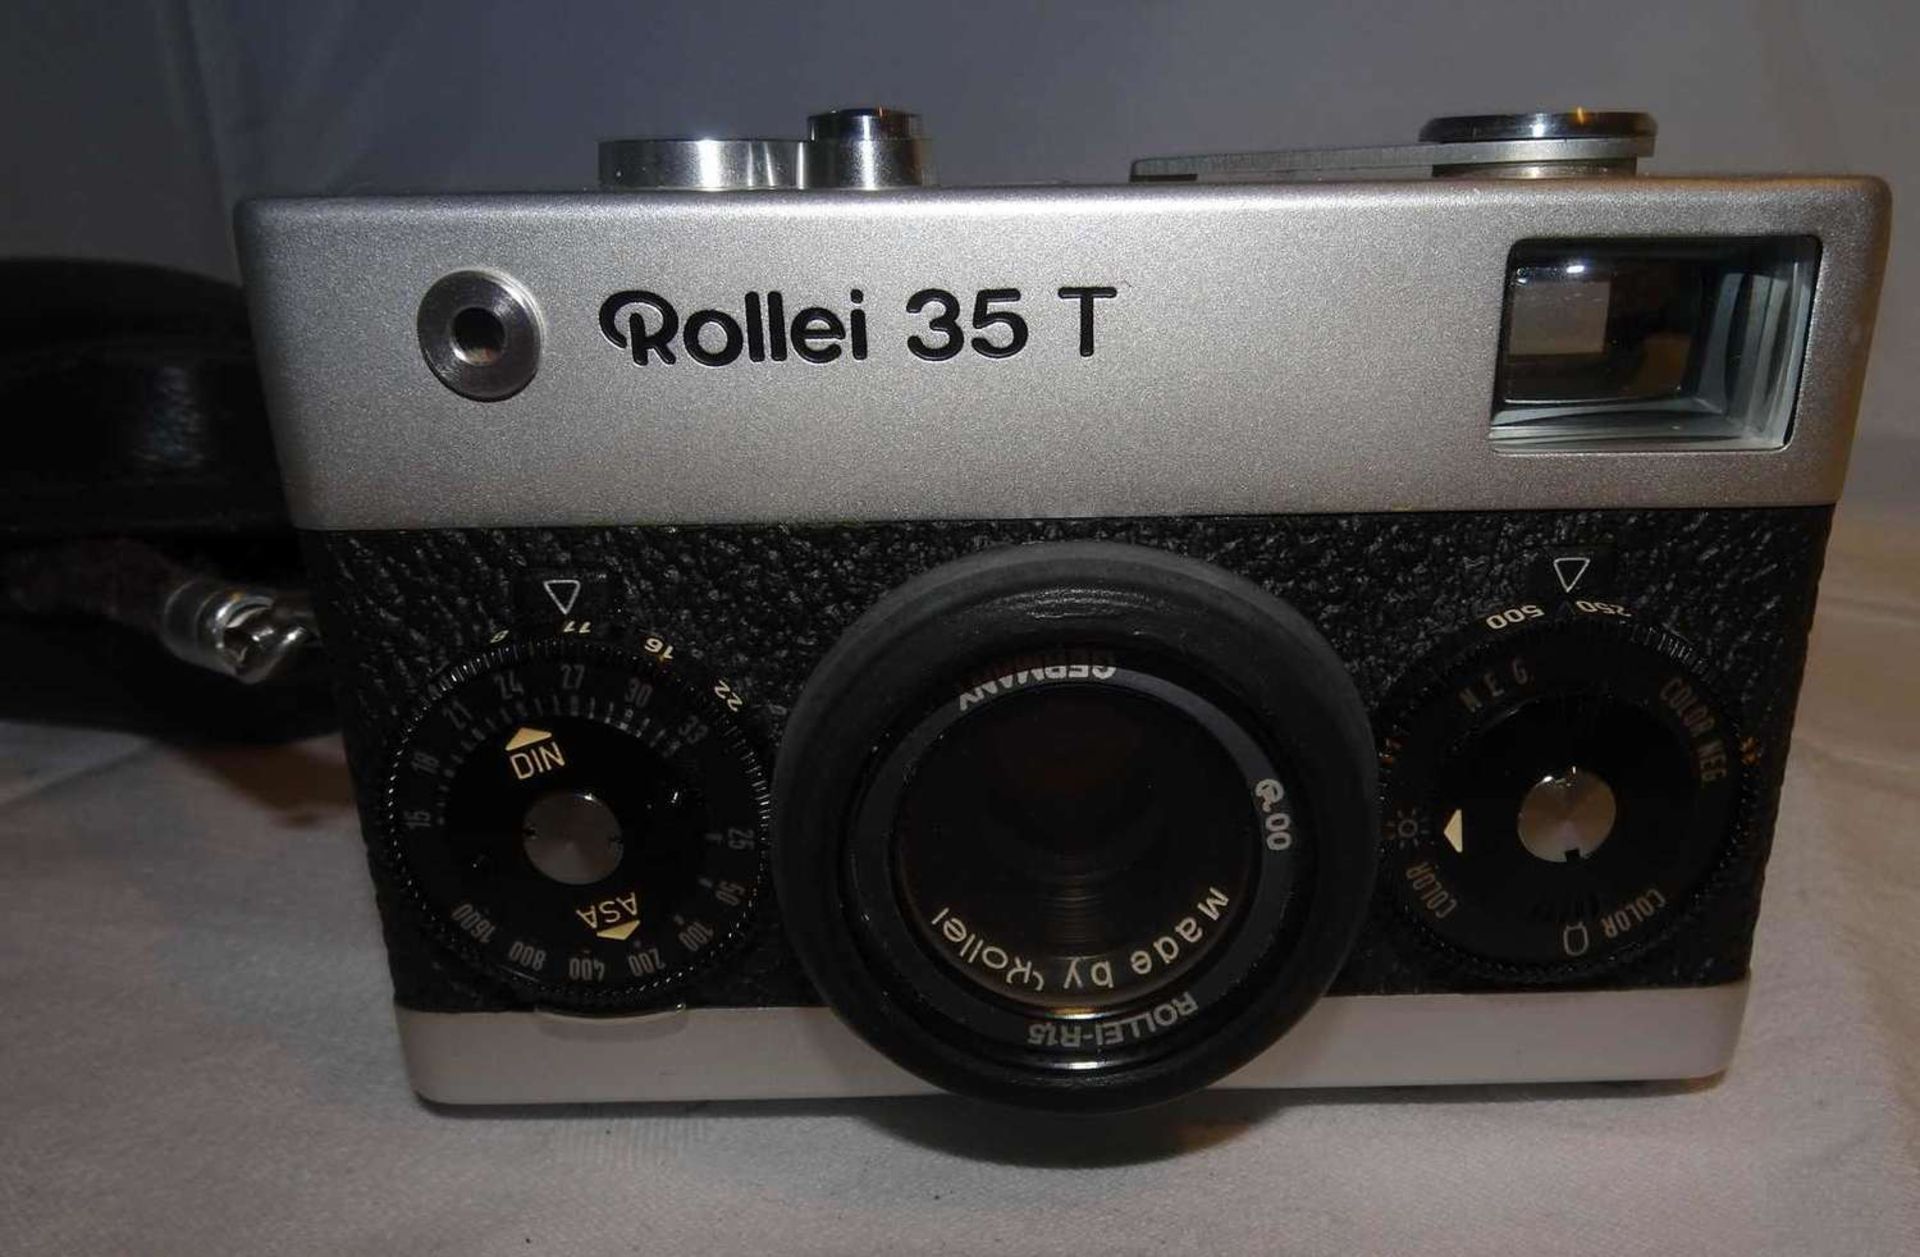 1 Kamera Rollei 35 T, sowie der dazugehörige Blitz Rollei 128 BC1 Rollei 35 T camera and the corre - Bild 2 aus 4